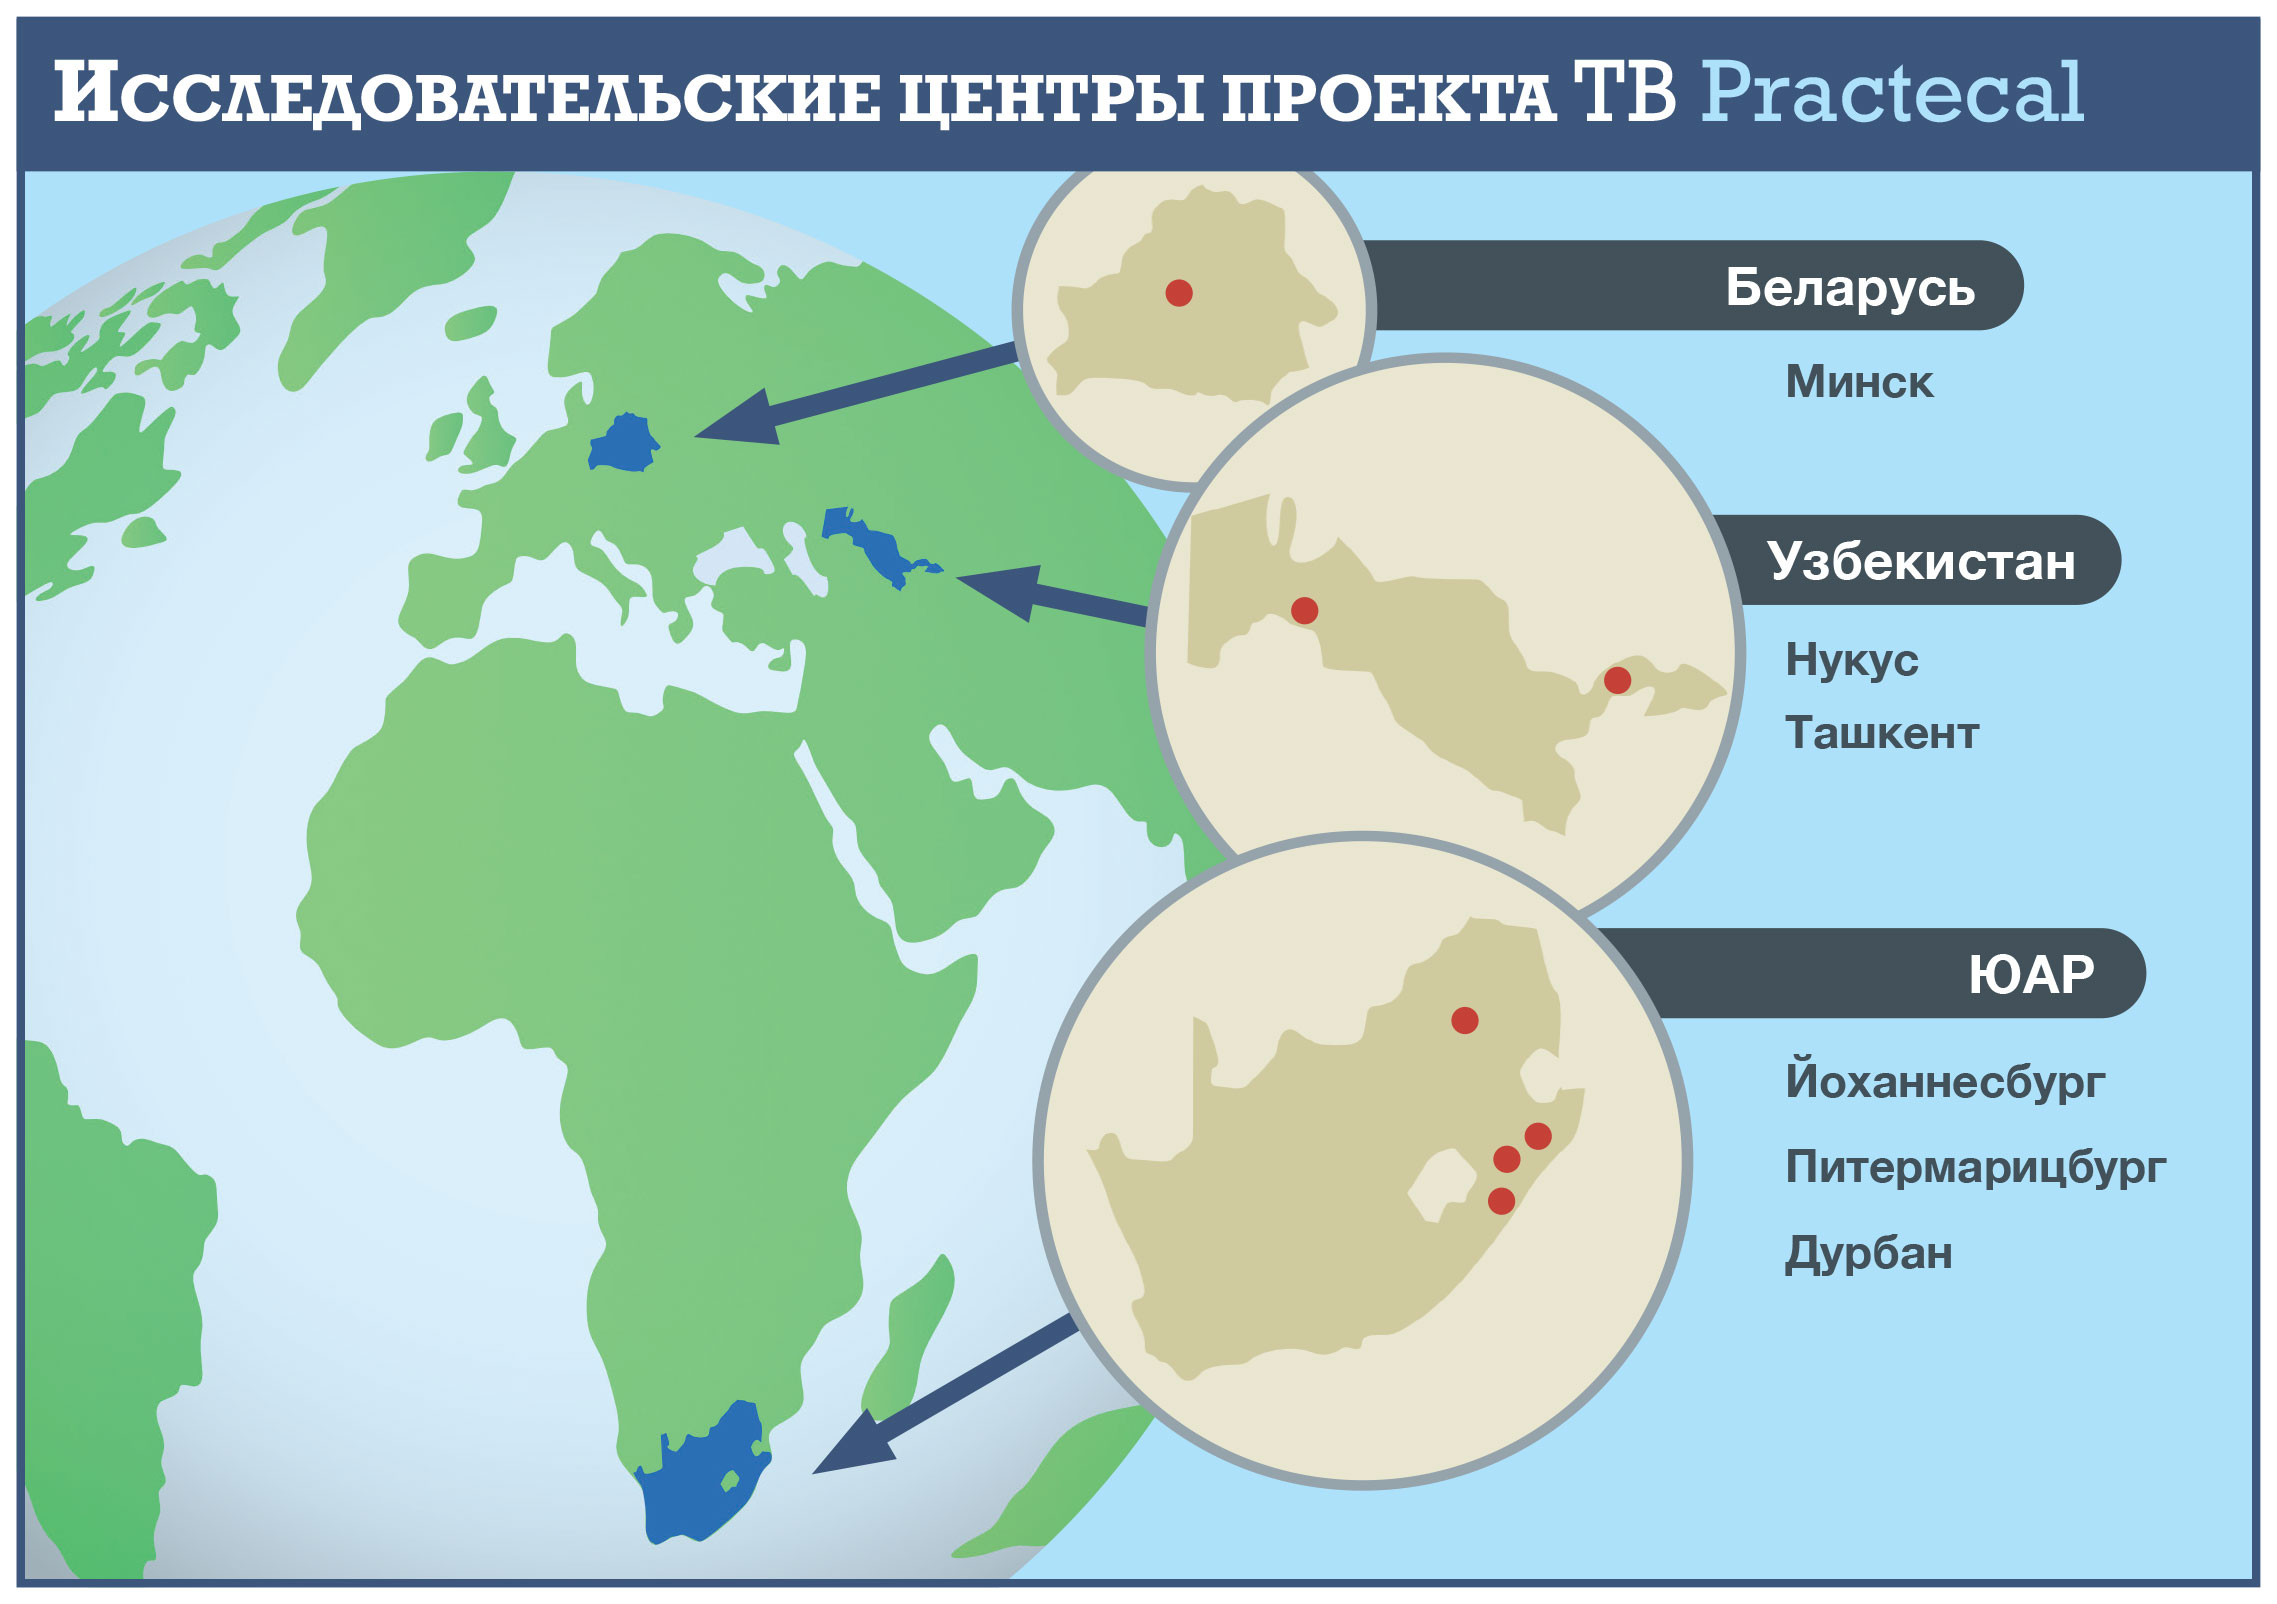 TB Practecal map - Ru